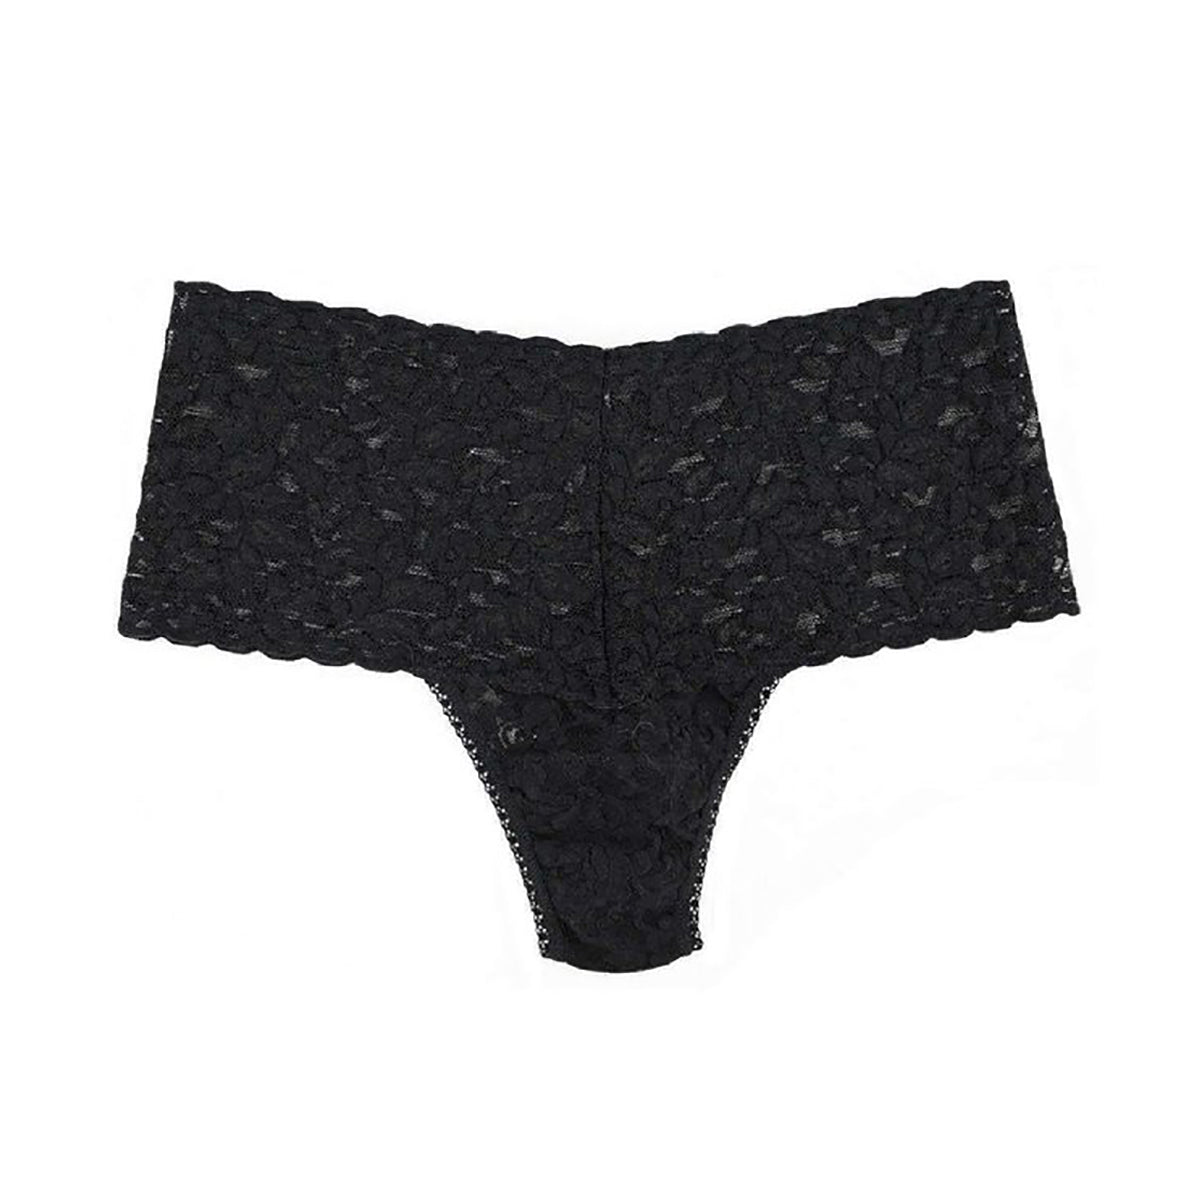 Retro Underwear Set Cami Bra & High Cut Thong in Black Lace -  Canada